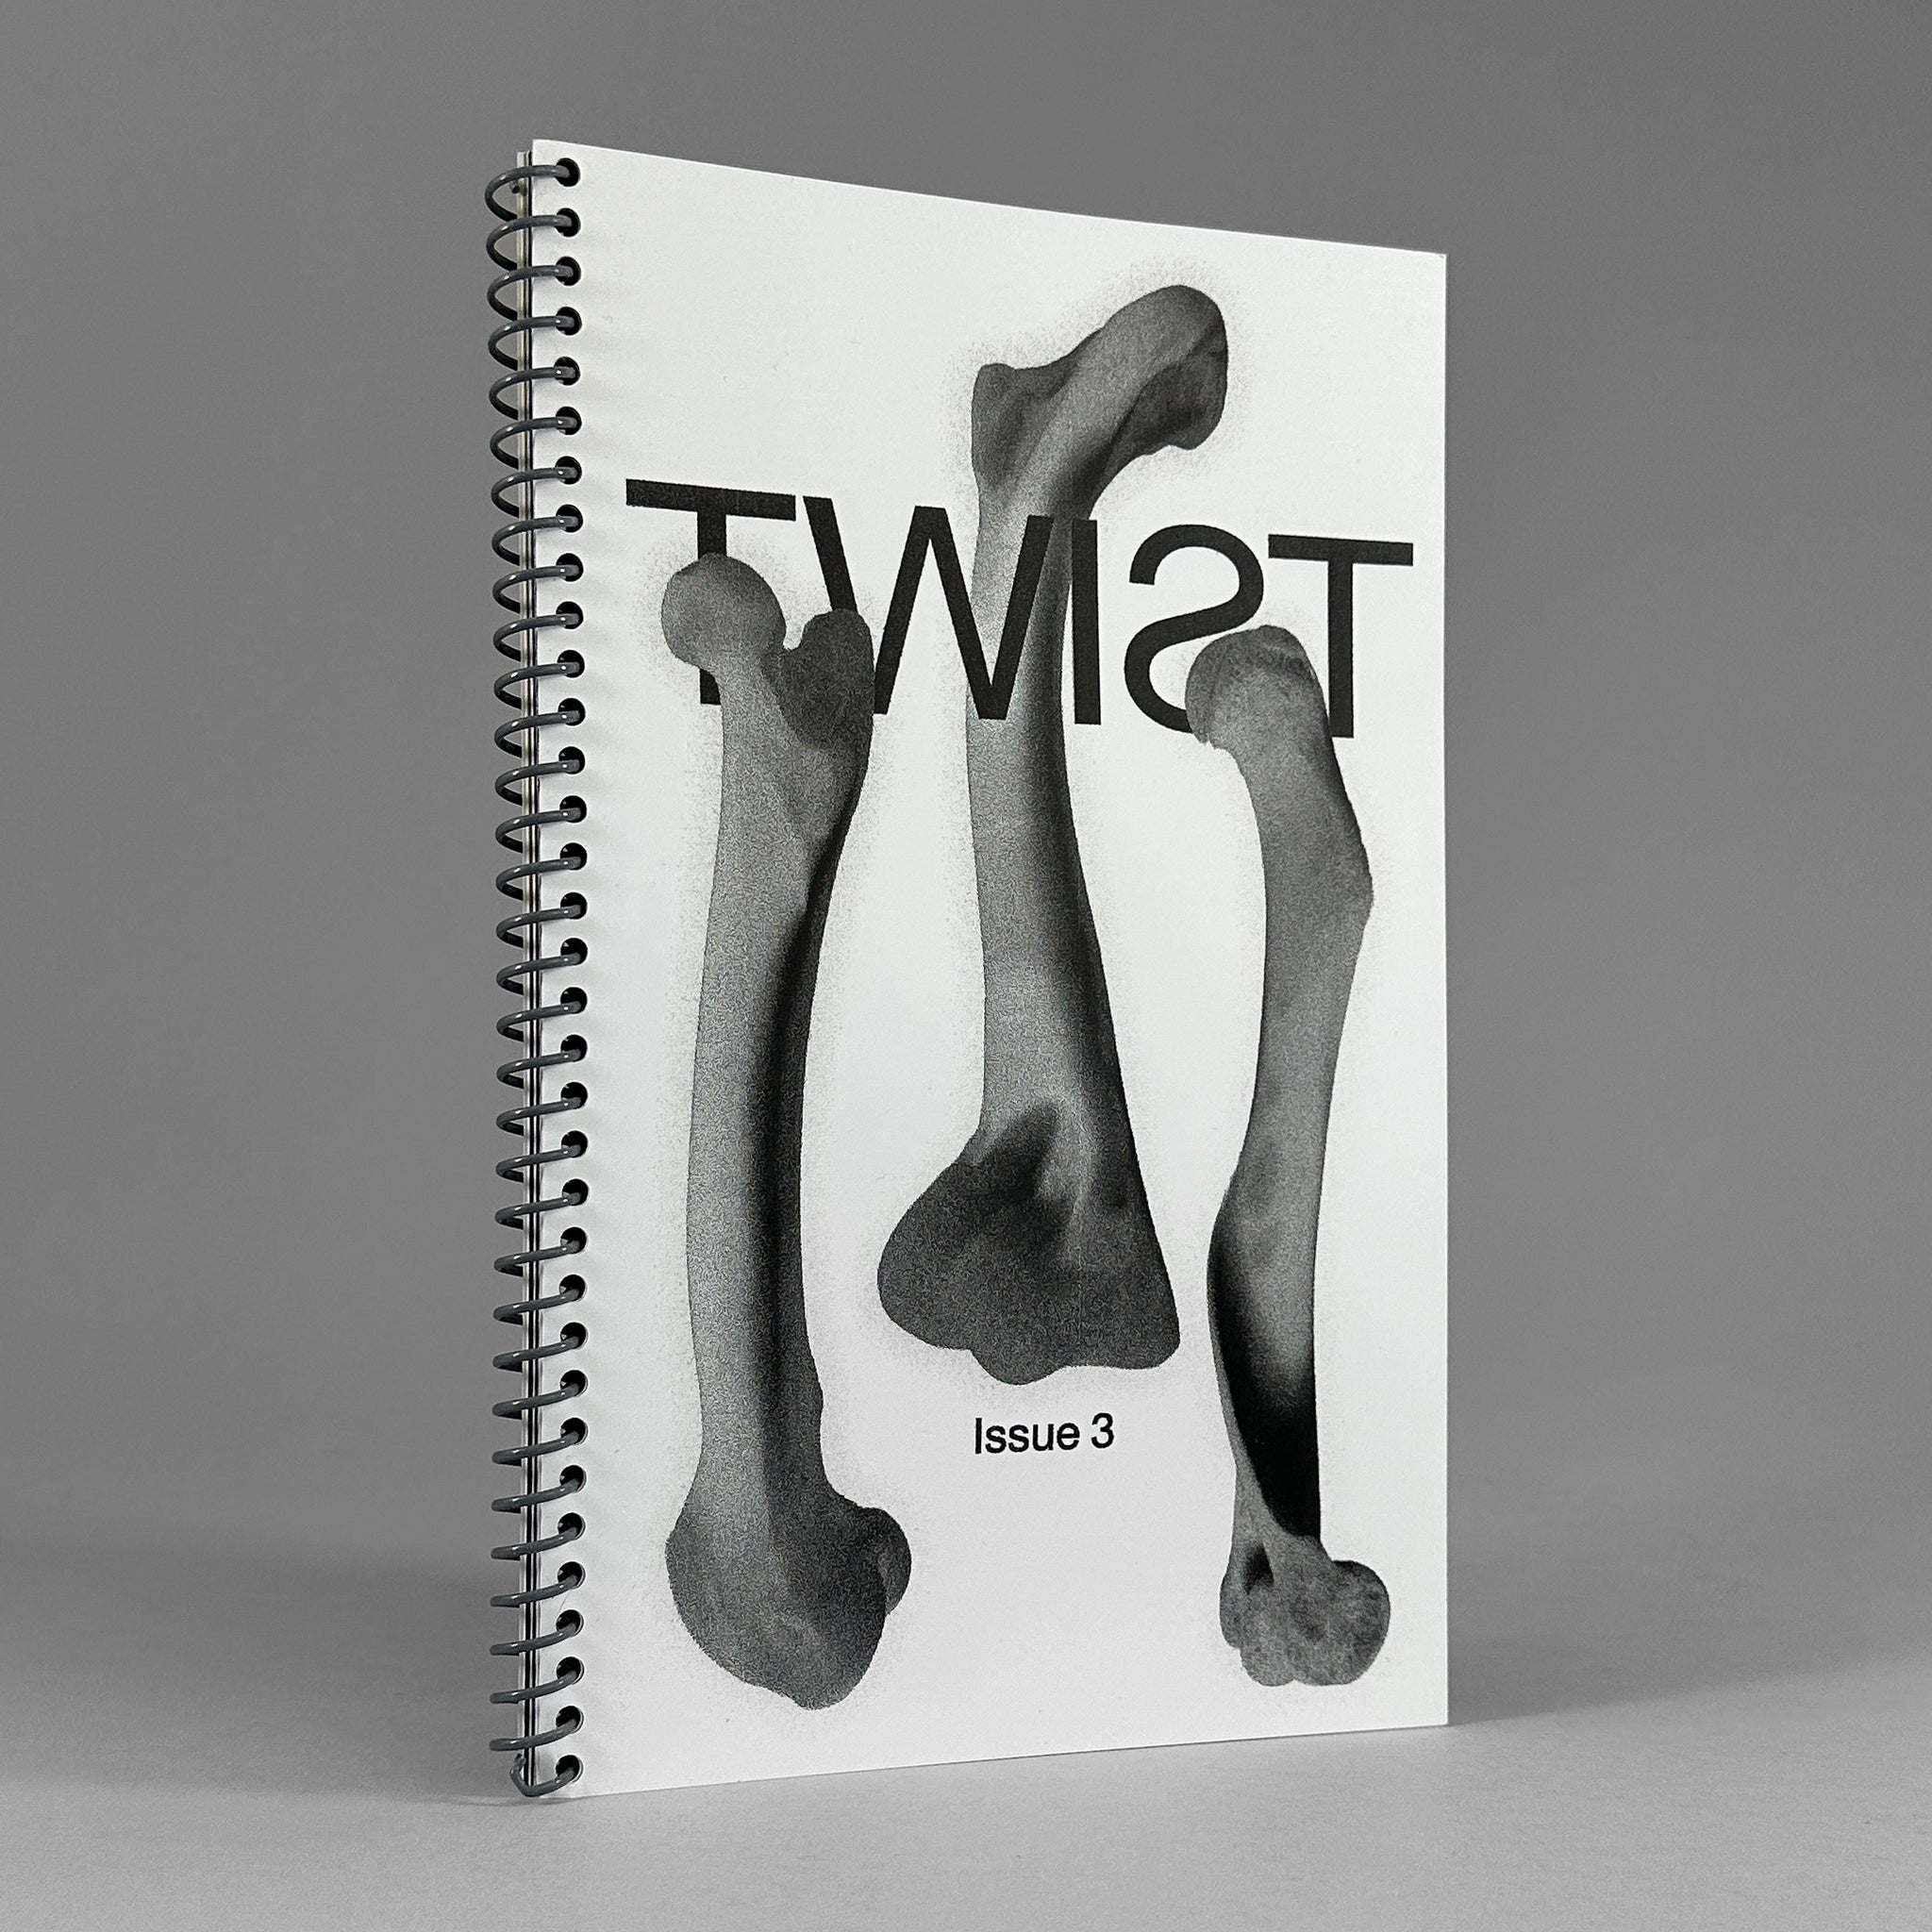 Twist, Issue 3